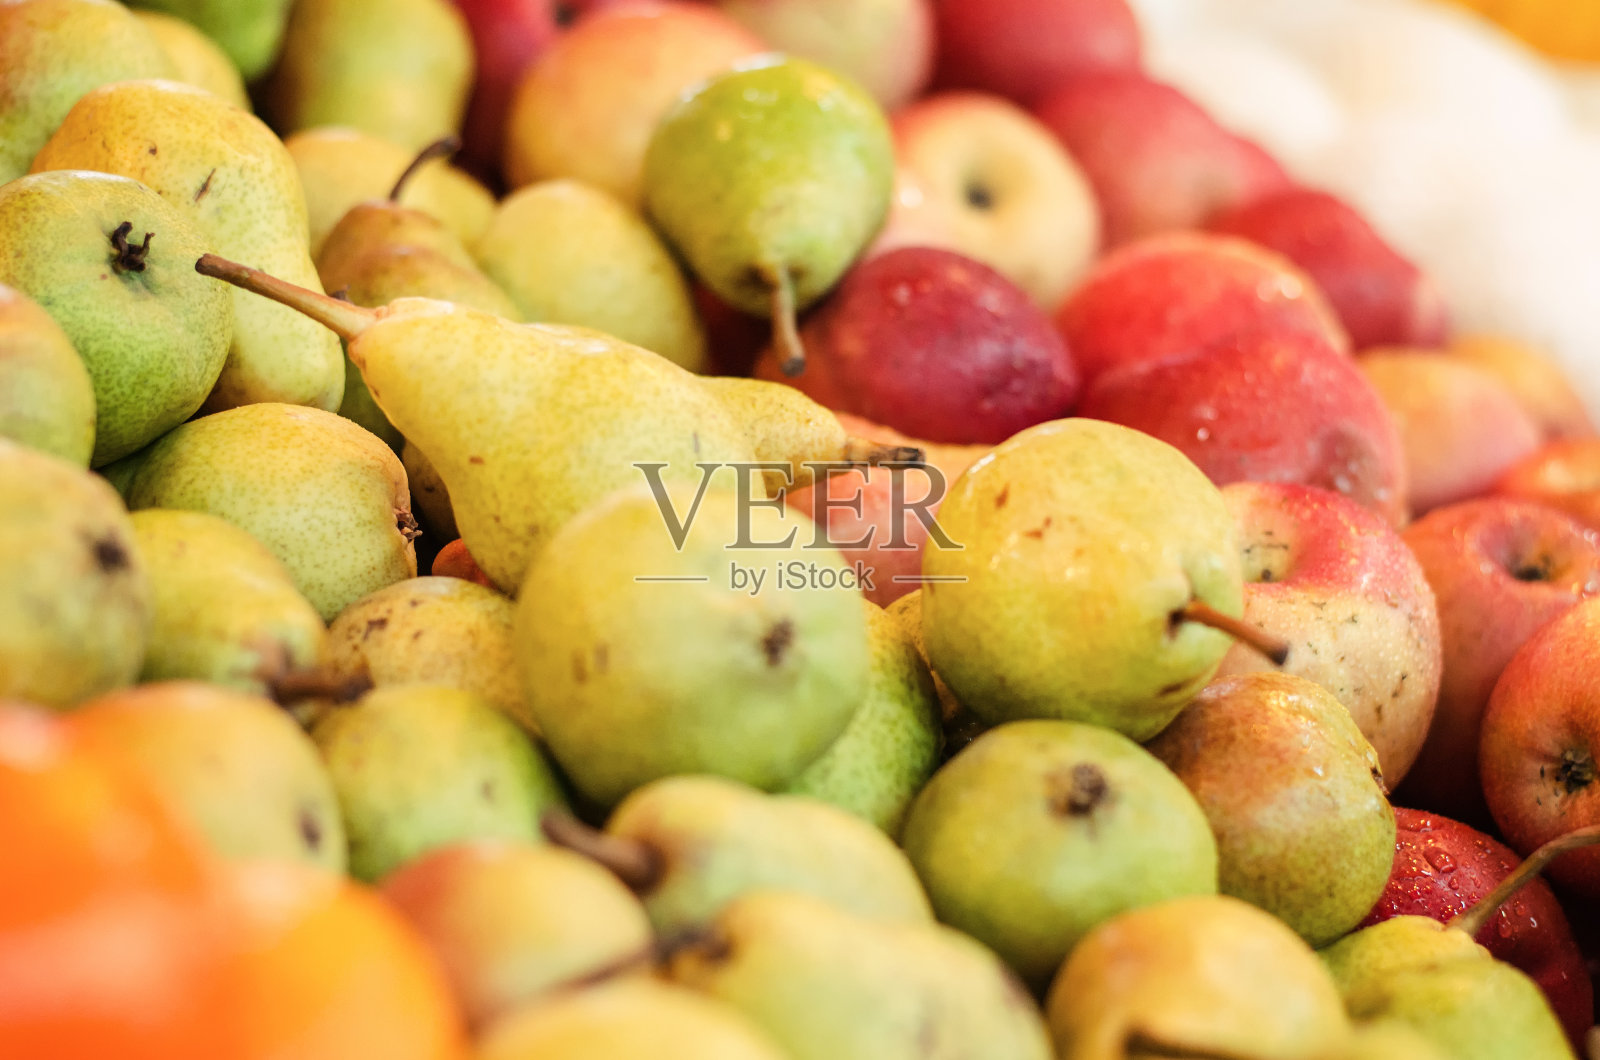 各种新鲜生水果的背景展示在市场摊位照片摄影图片